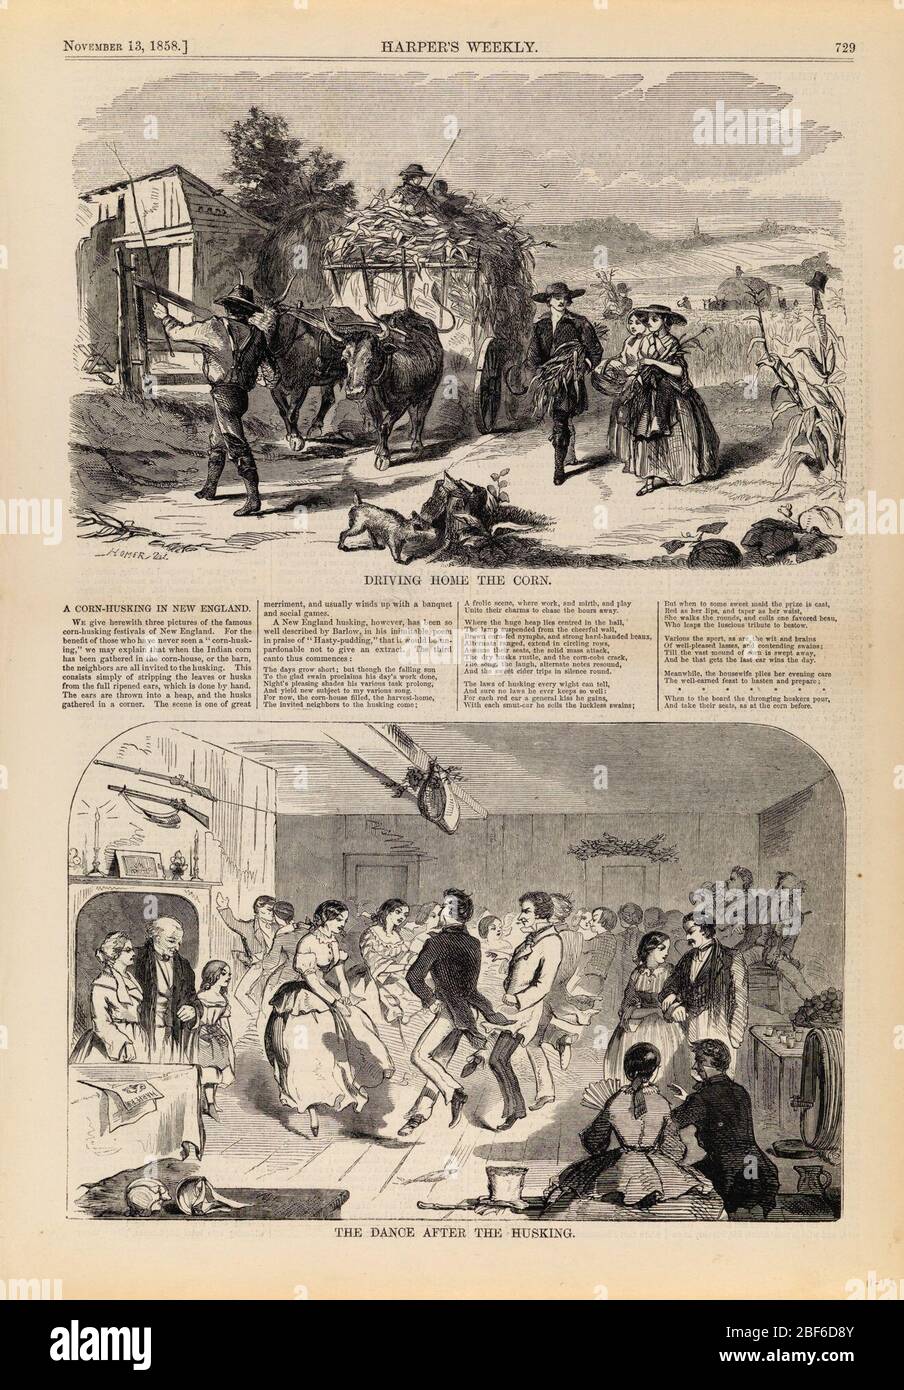 Guida a casa la CornLa danza dopo la morditura da Harpers Weekly Novembre 13 1858. Foto Stock